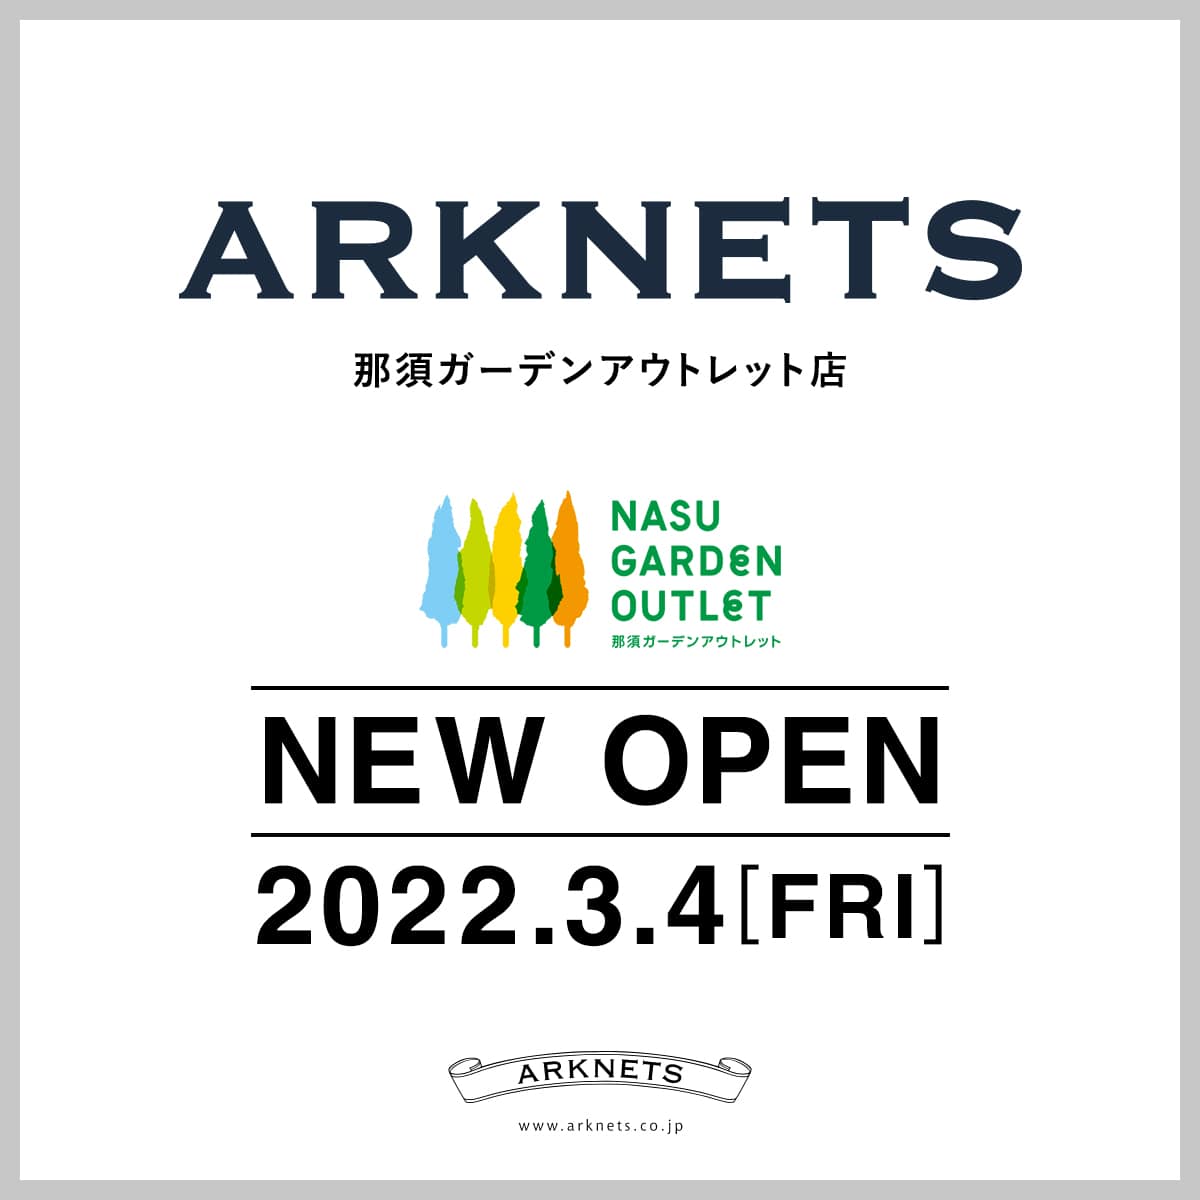 Arknets那須ガーデンアウトレット店 New Openのお知らせ Arknets アークネッツ メンズ レディース公式通販 正規取扱店